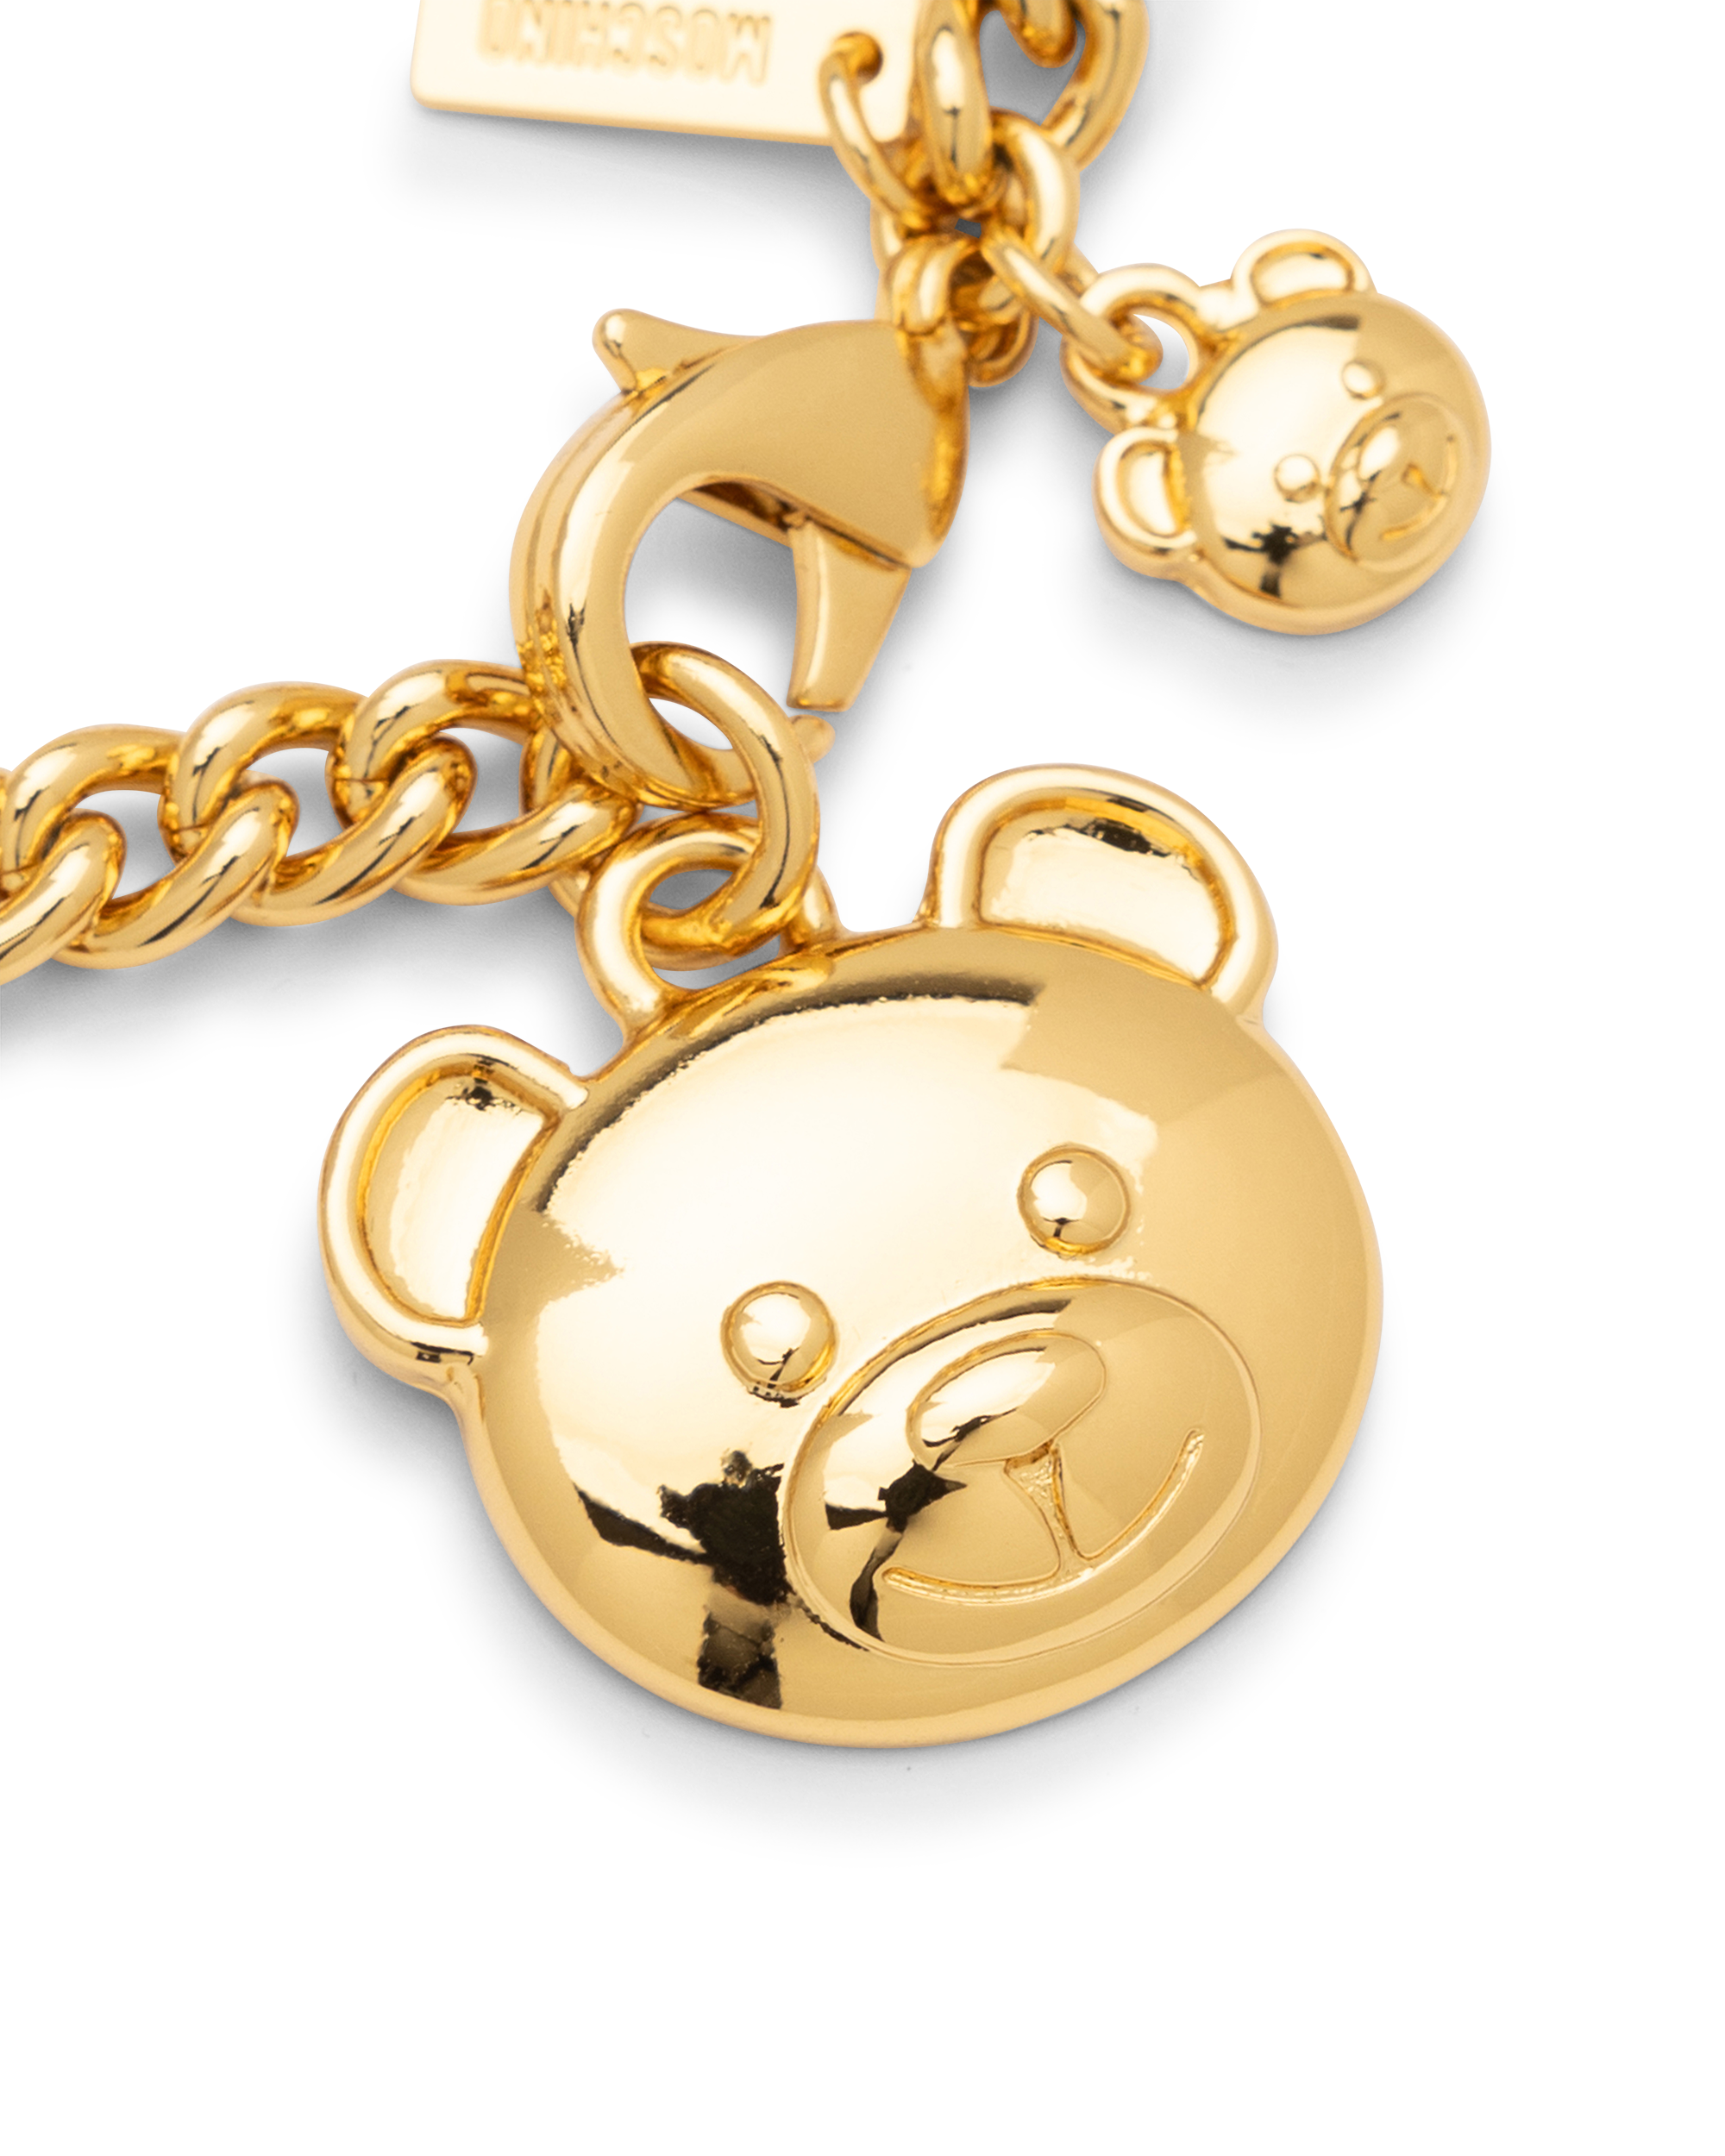 Teddy Bear Charm Chain Bracelet